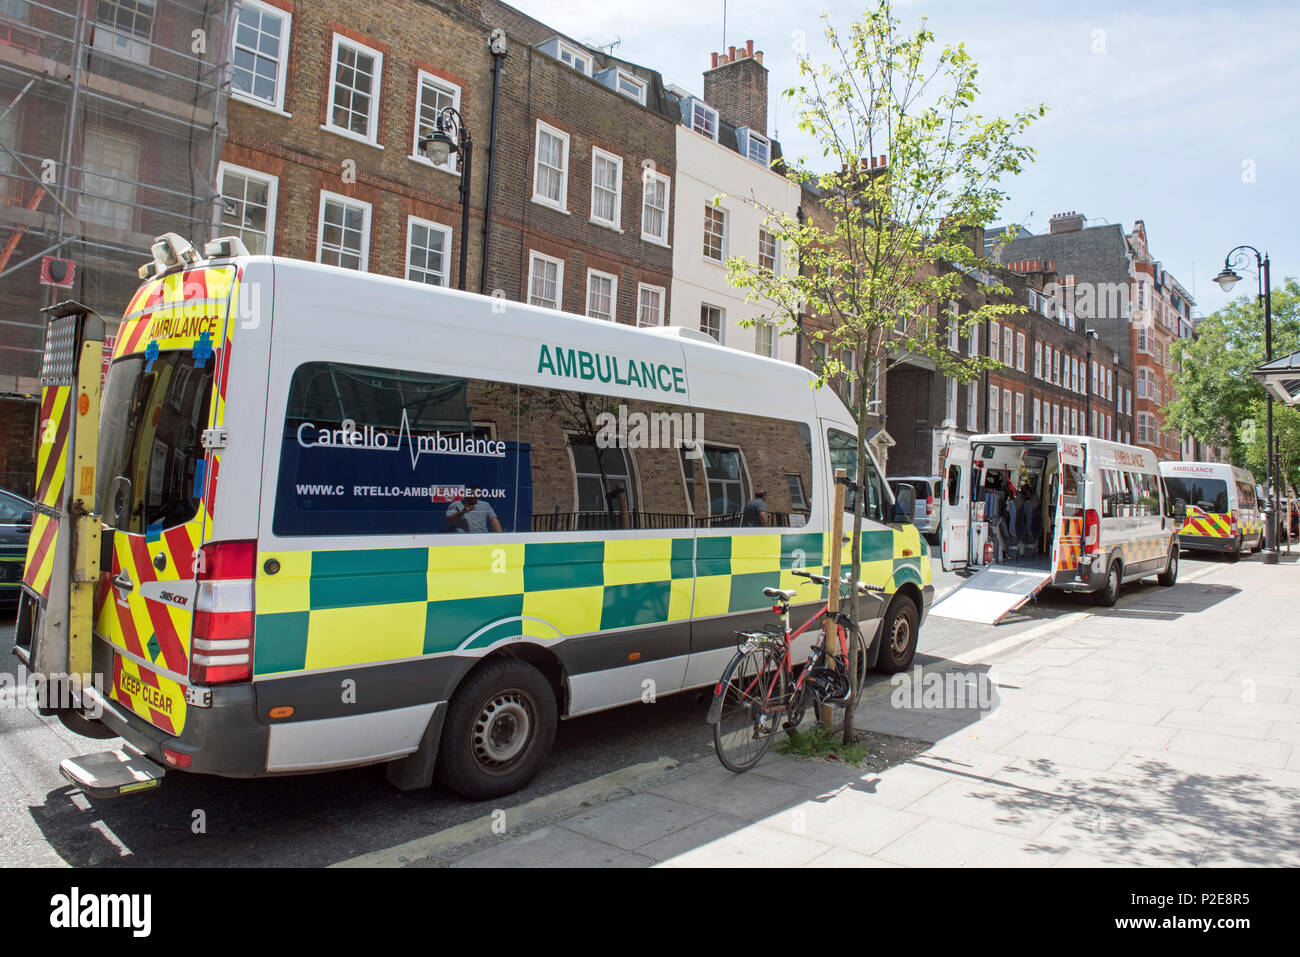 Les ambulances, y compris l'ambulance privée Cartello, stationné dans la rue Great Ormond Egland Londres Grande-bretagne UK Banque D'Images